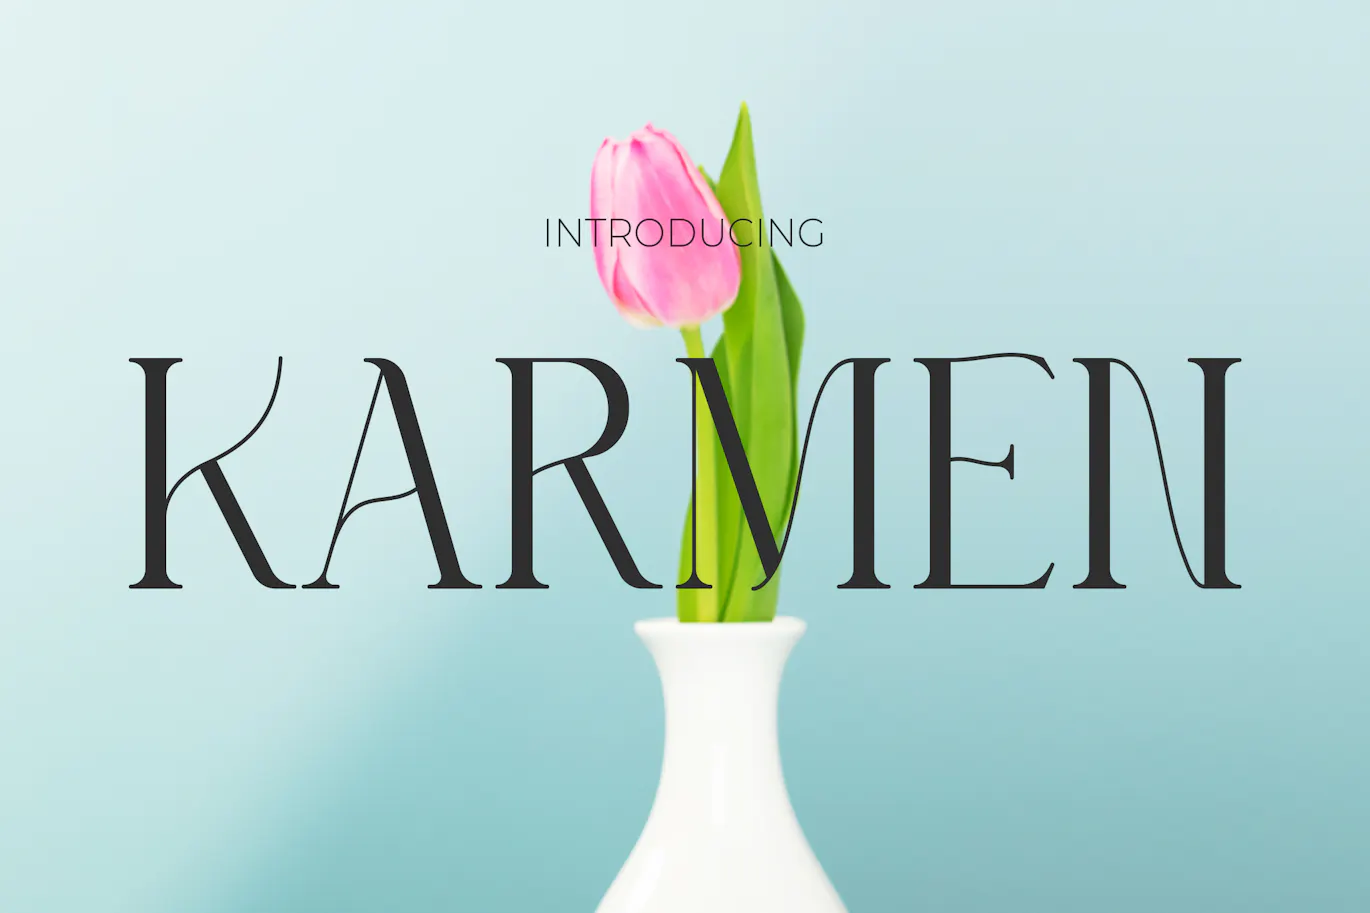 优雅线条与粗线条结合的现代英文衬线字体 - Karmen